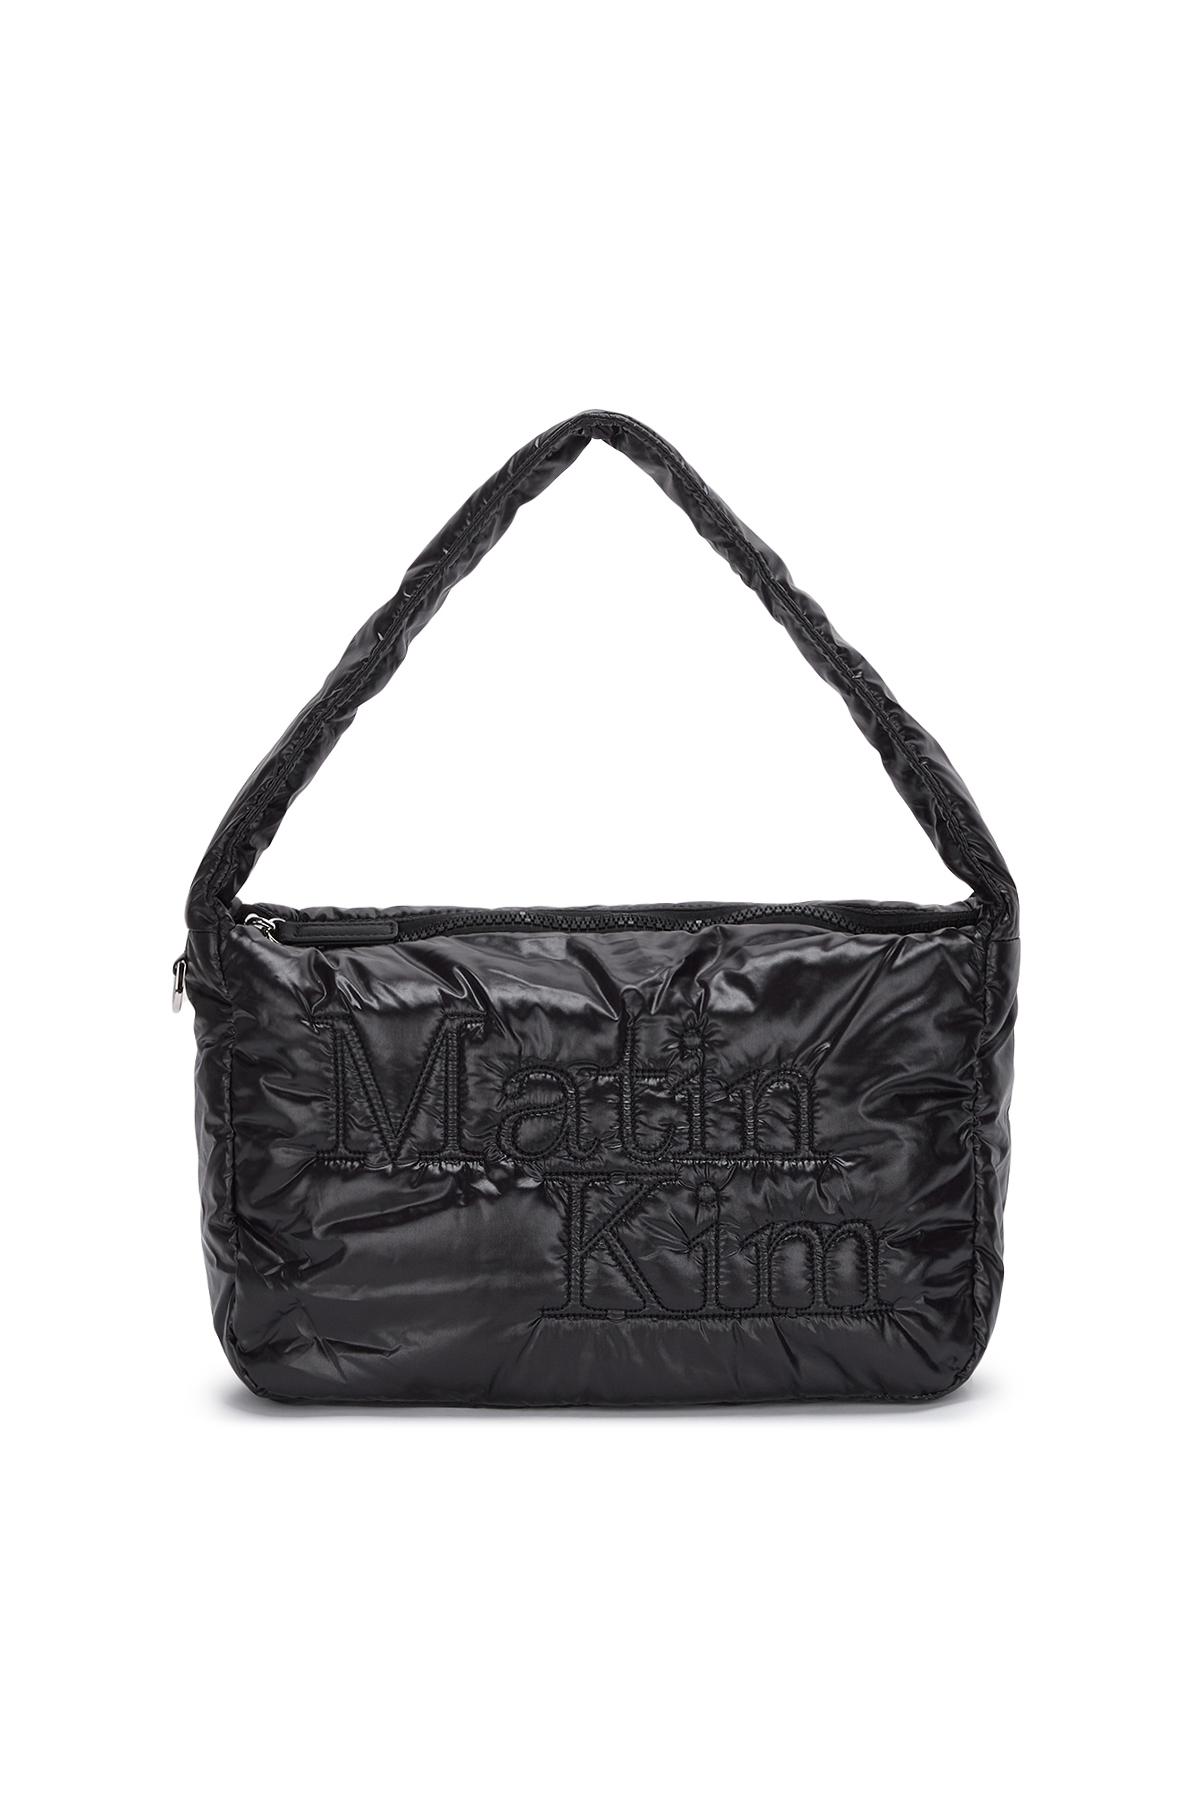 Bolso bag grande negro – Sorellas The Brand Barcelona S.L